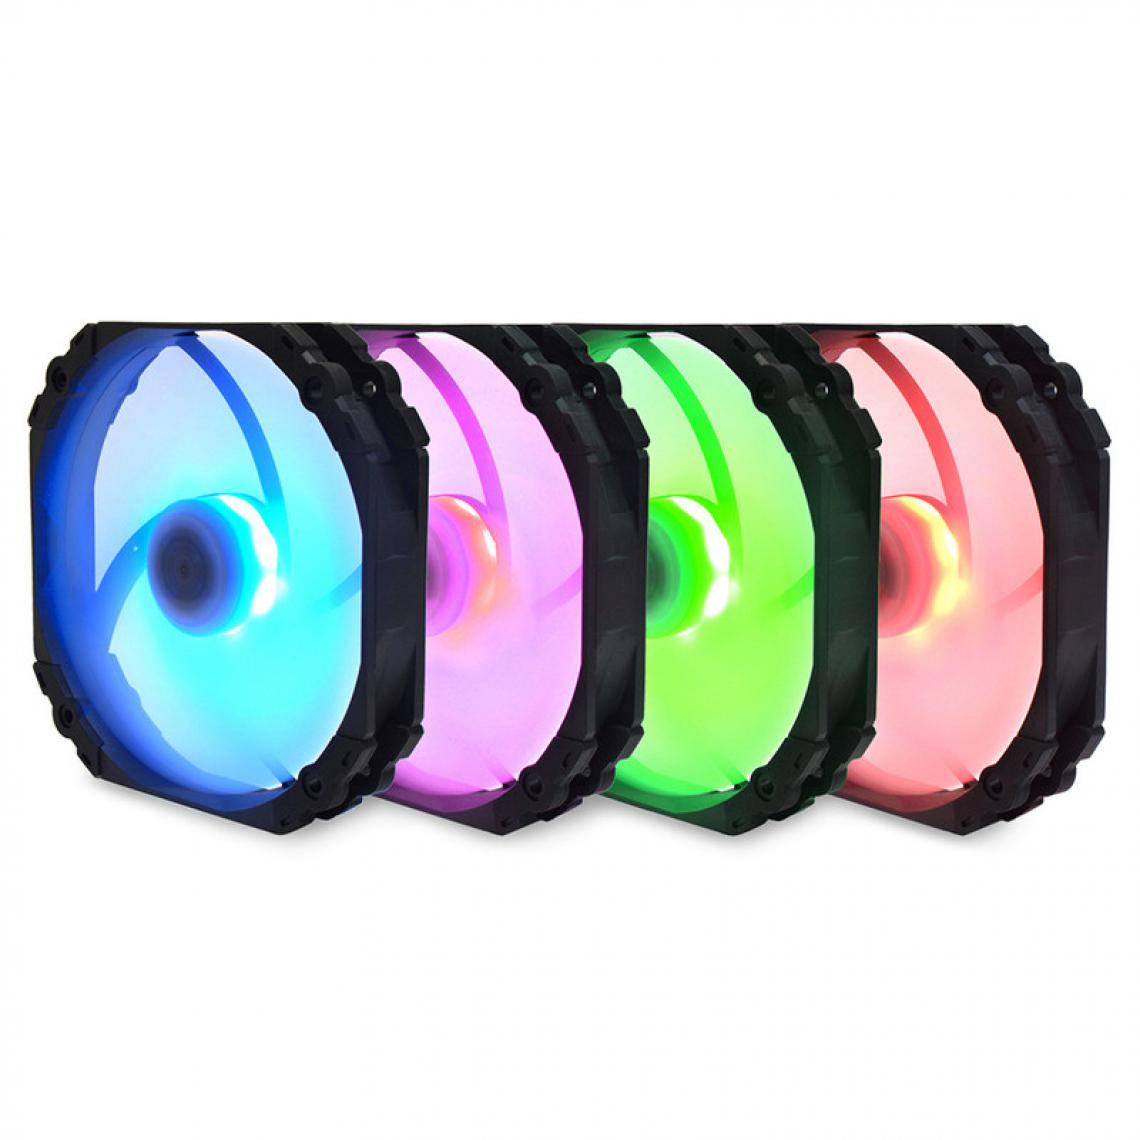 Scythe - Kaze Flex Round RGB PWM Ventilateur - Ventilateur Pour Boîtier